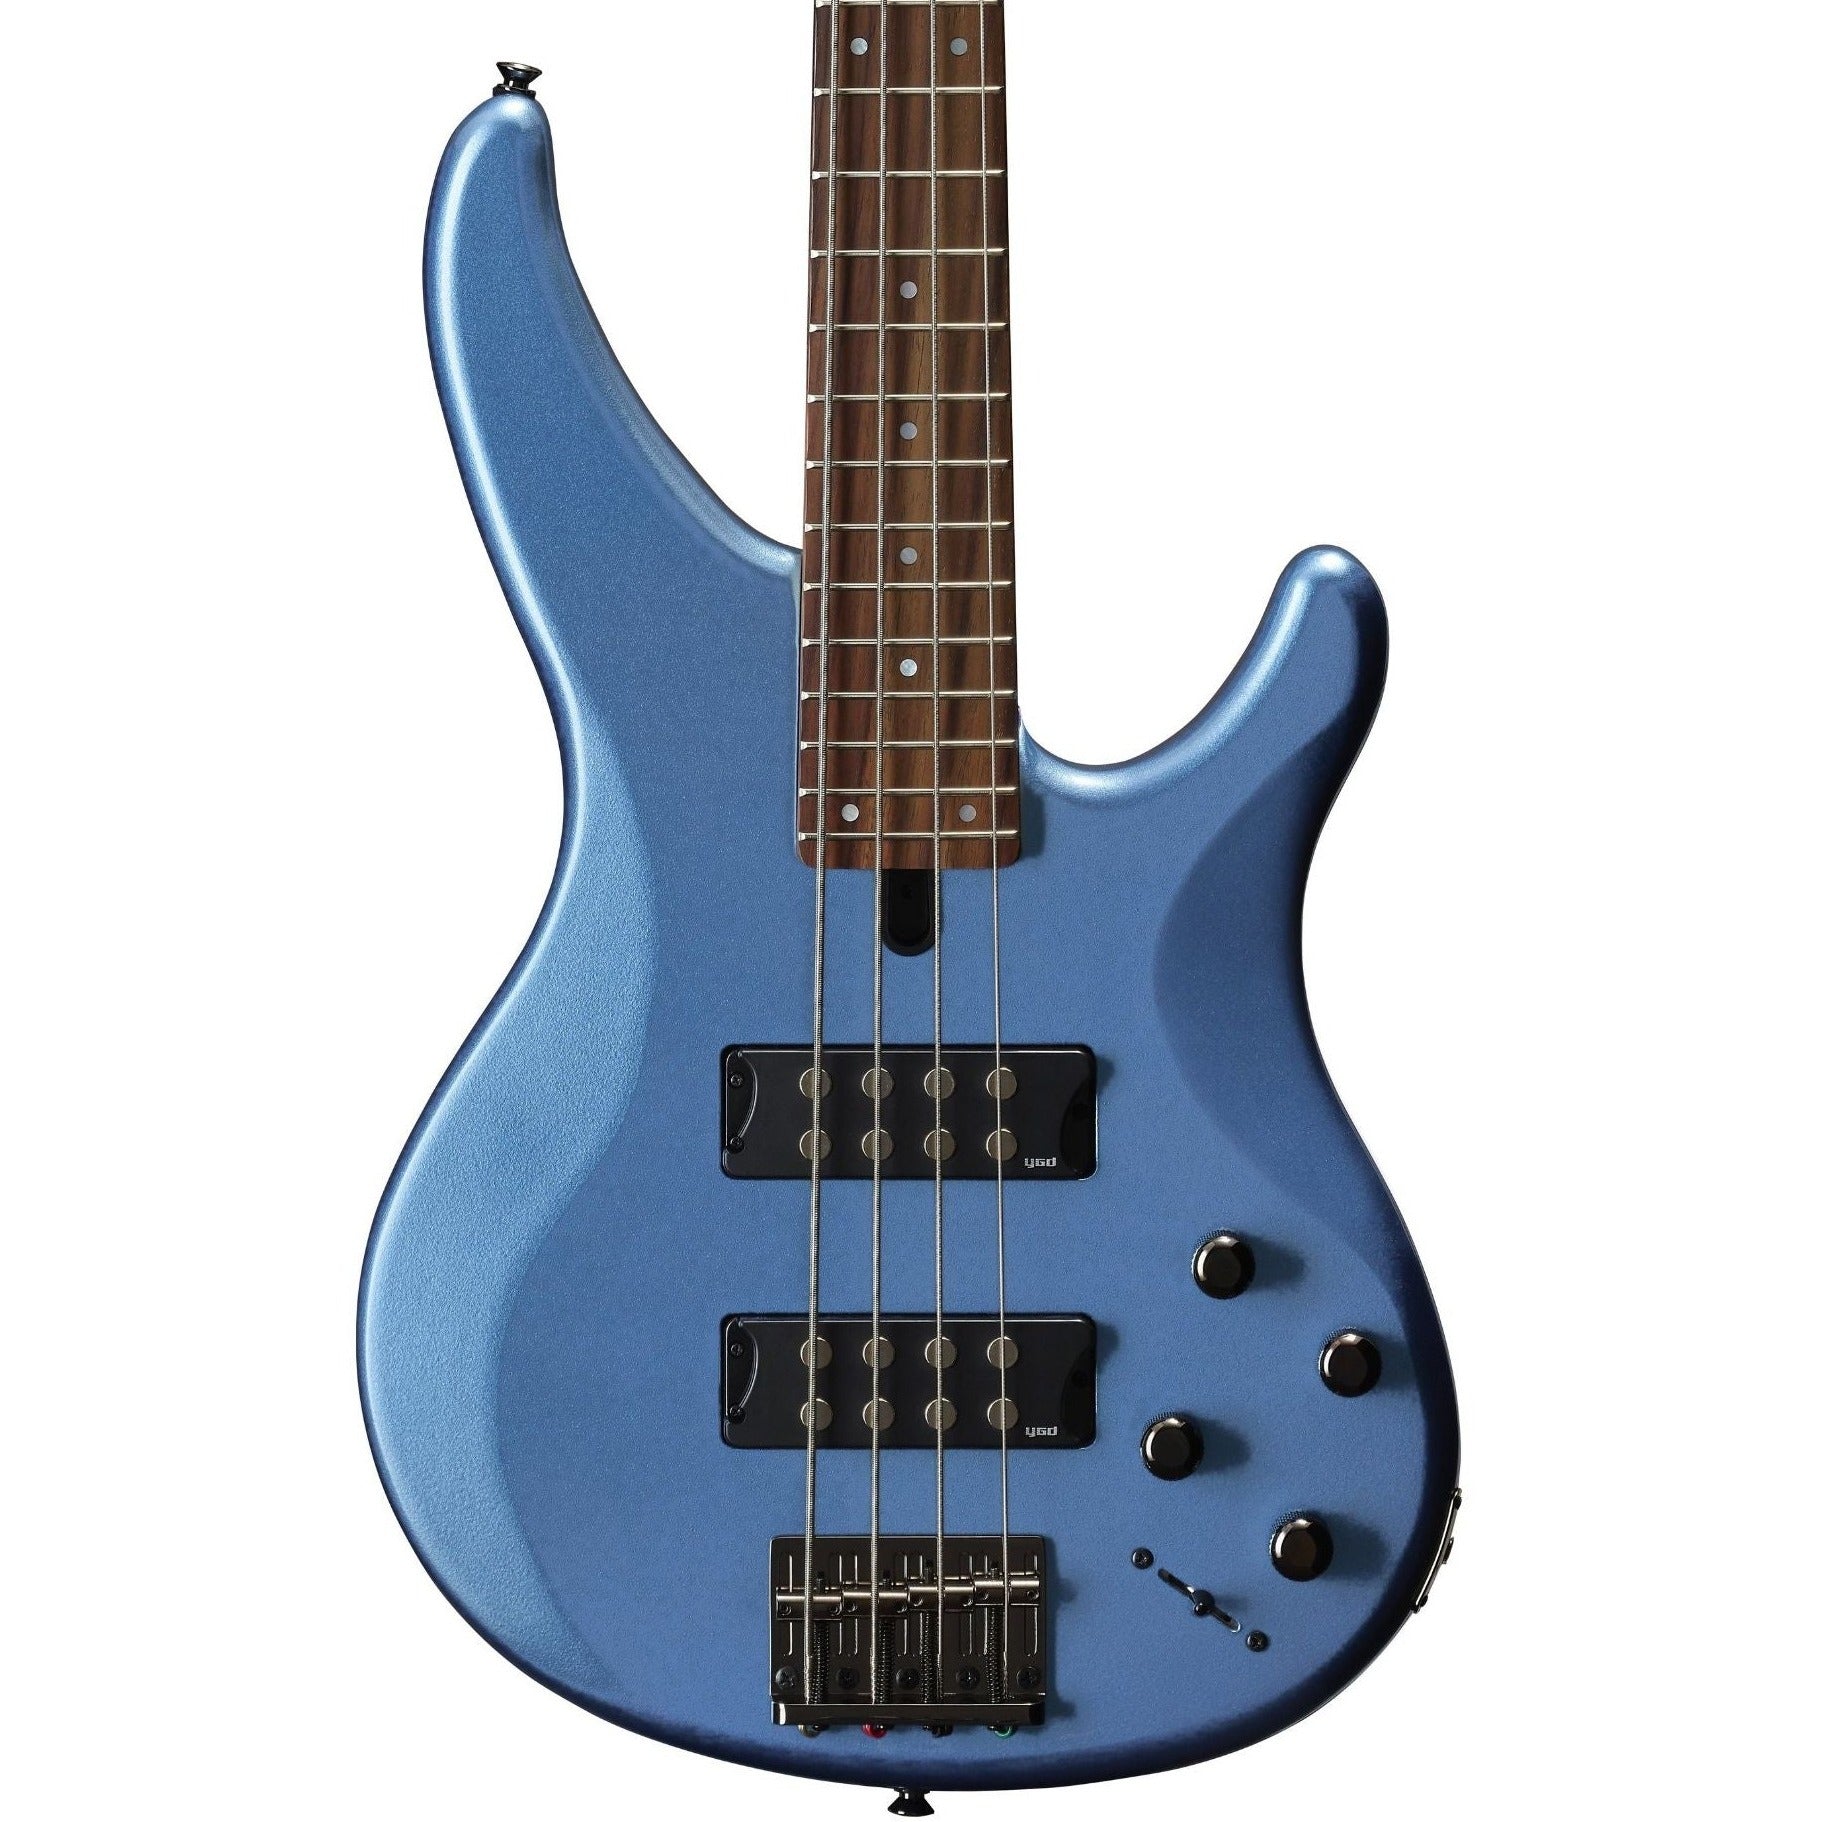 Yamaha TRBX304 Bass Guitar, Factory Blue